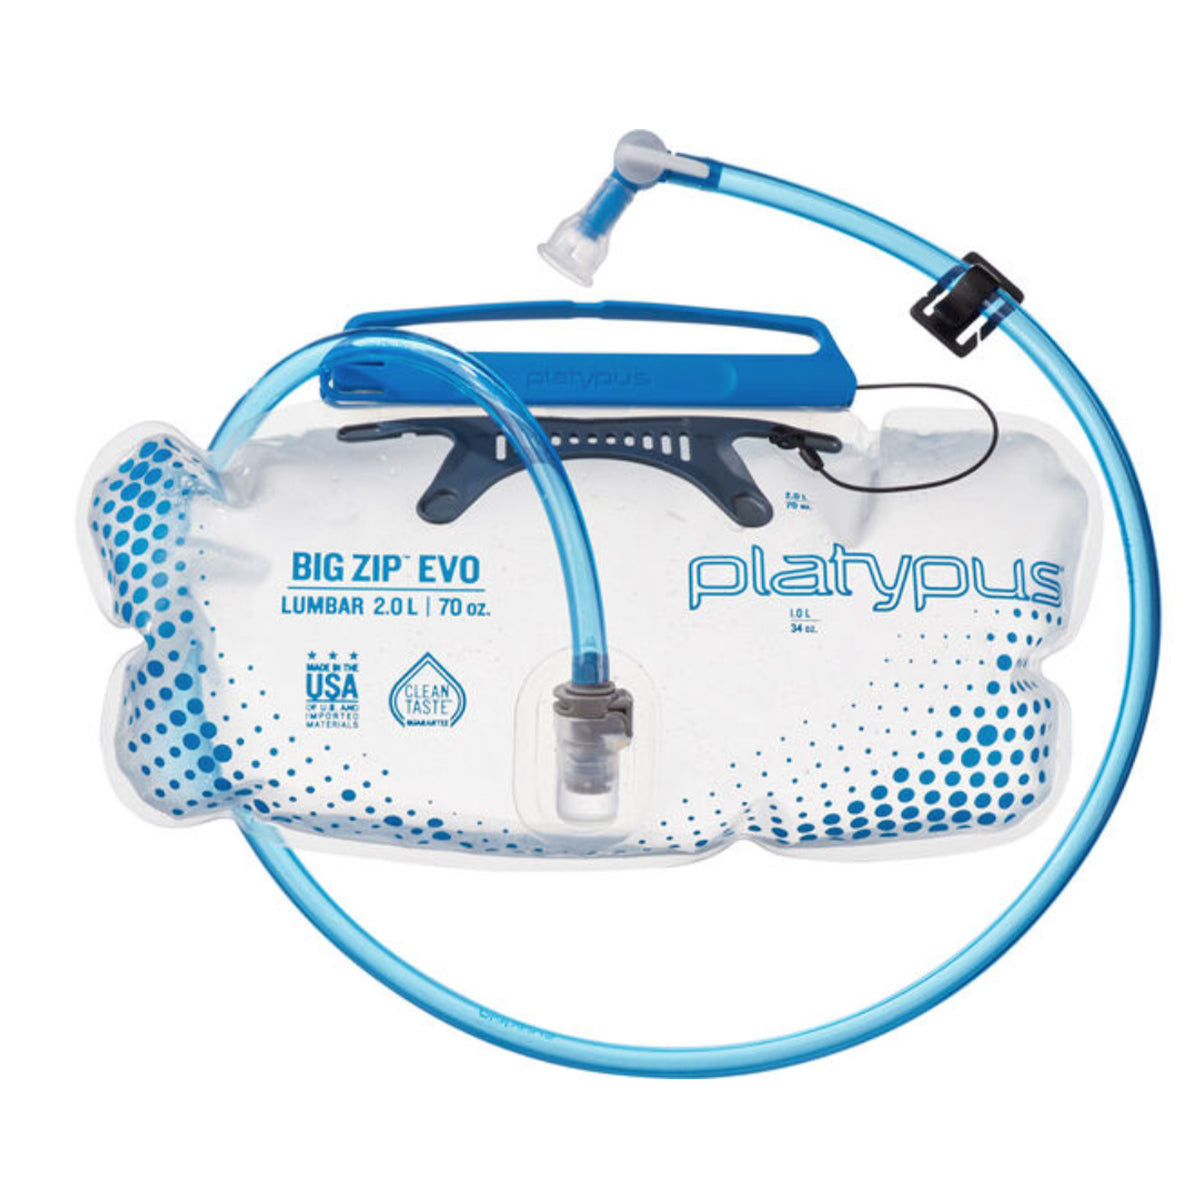 Platypus Big Zip EVO Lumbar Hydration Bladder in  by GOHUNT | Platypus - GOHUNT Shop